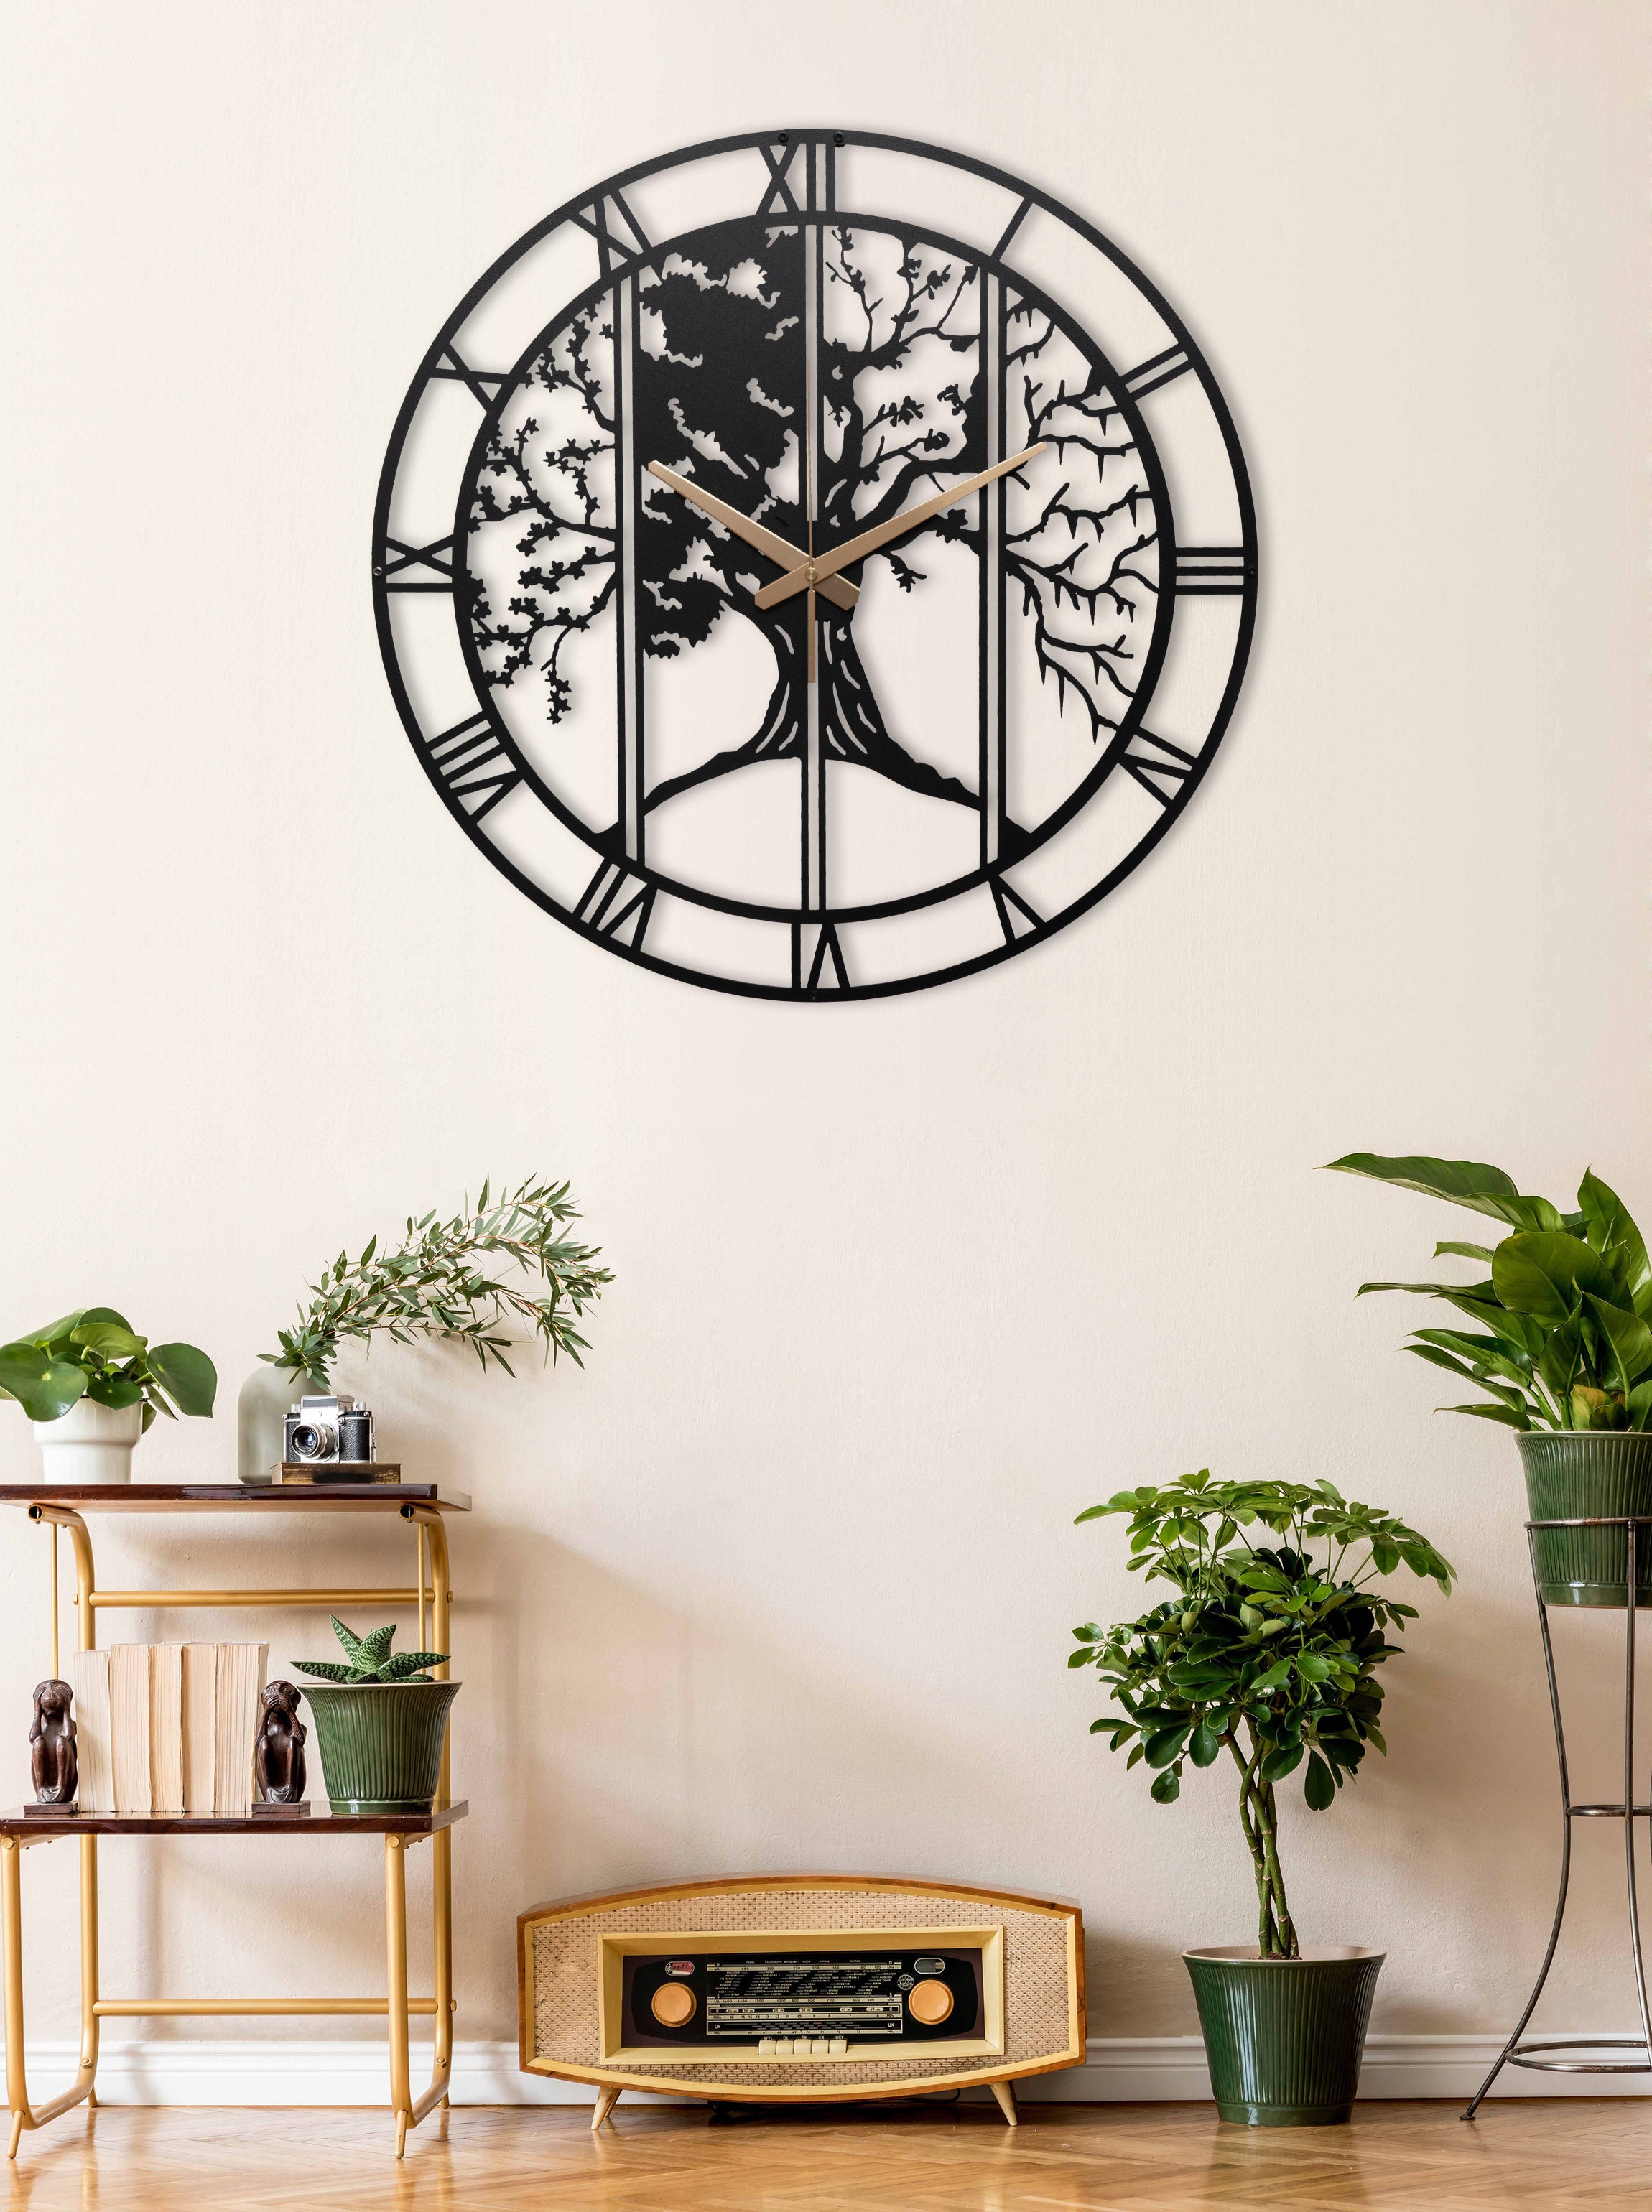 Four Season Metal Large Unique Wall Clock Horloge Murale